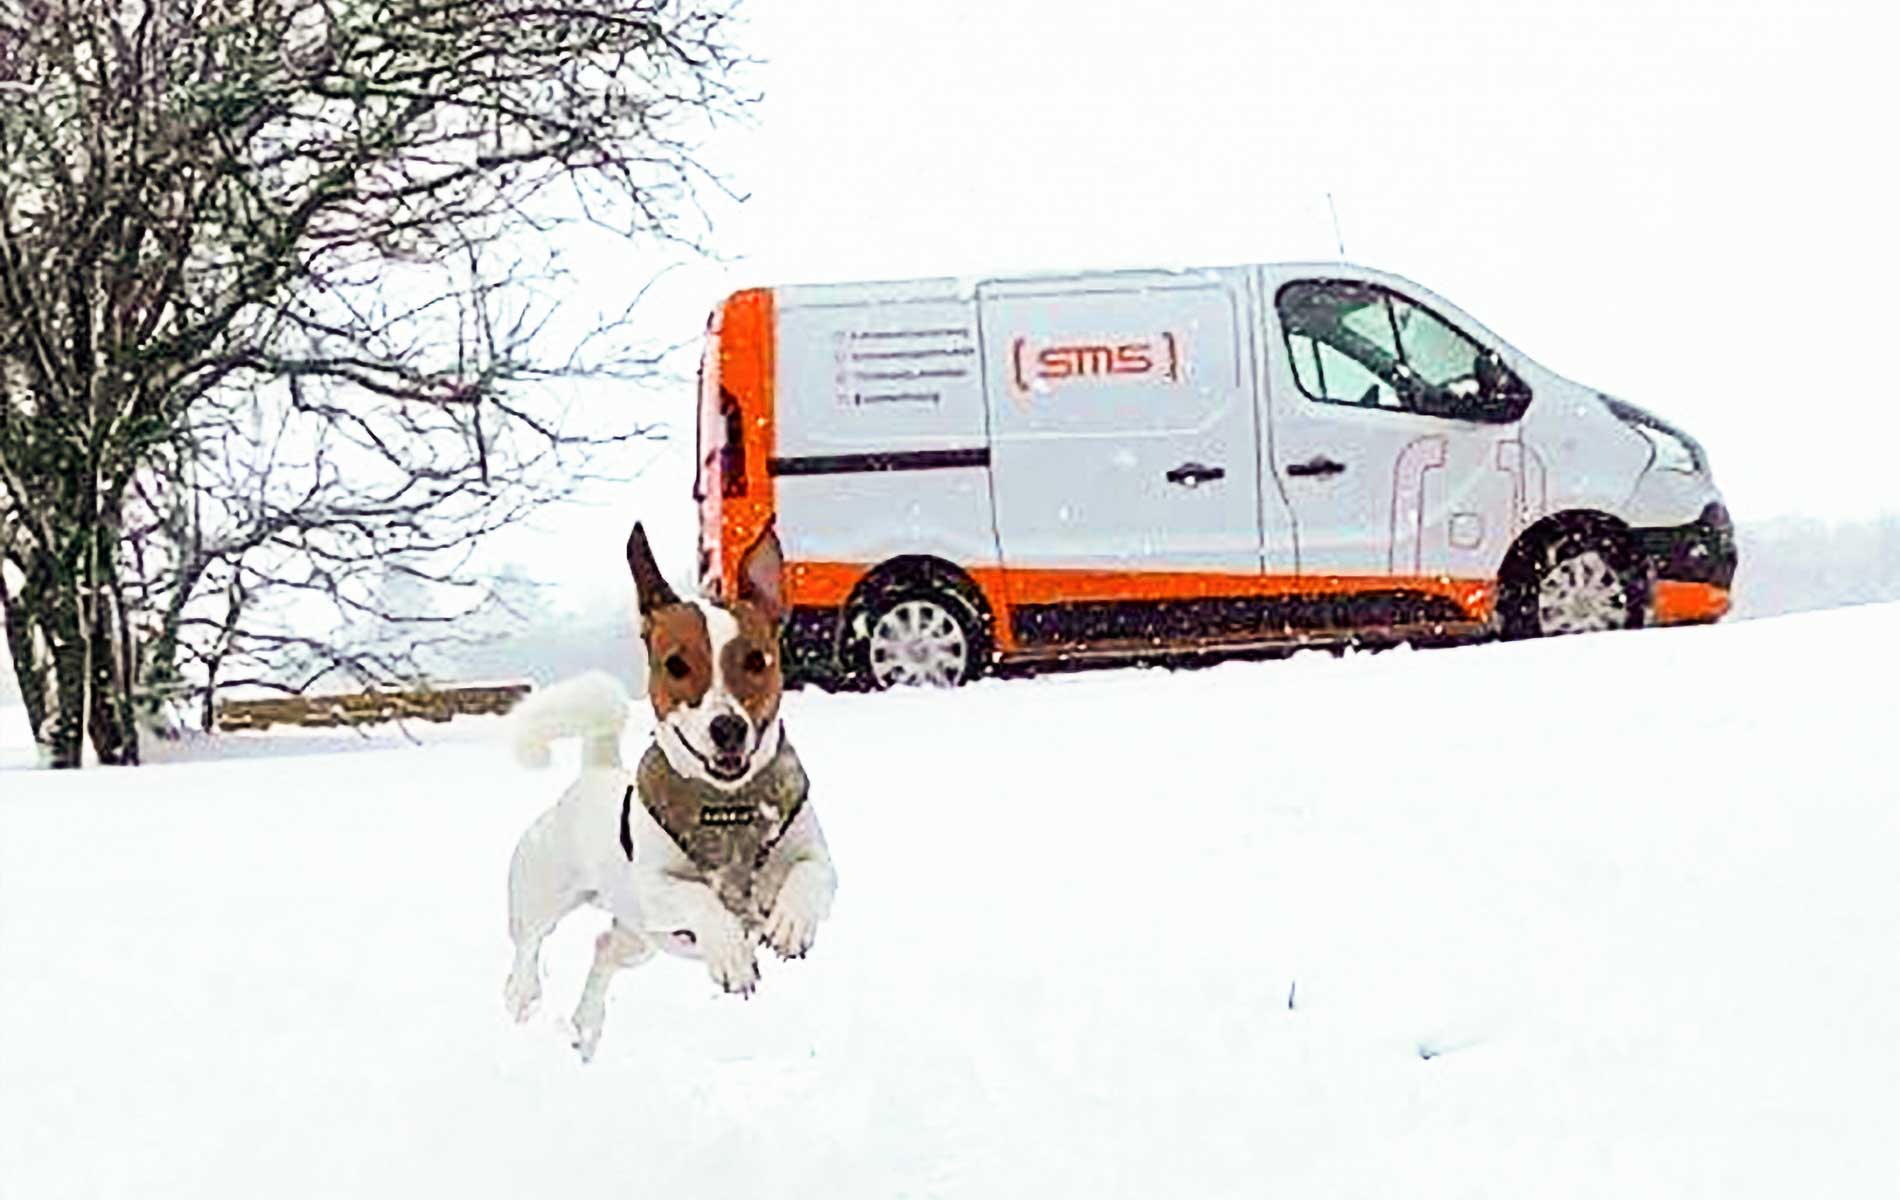 Einsatz im Schnee für Schimmelspürhund Sam | SMS Group